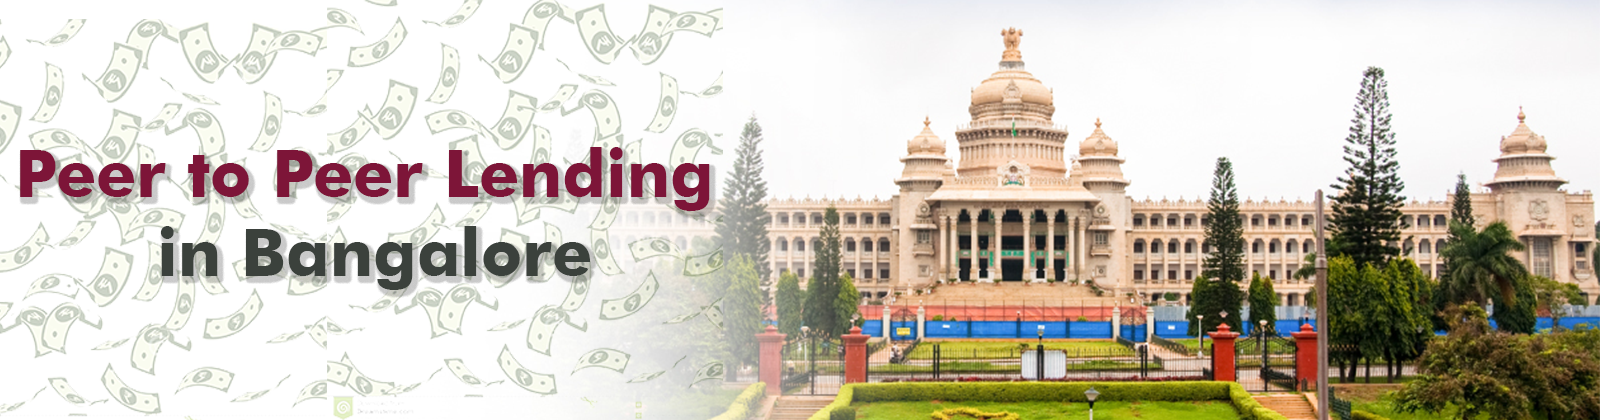 Peer to Peer Lending in Bangalore